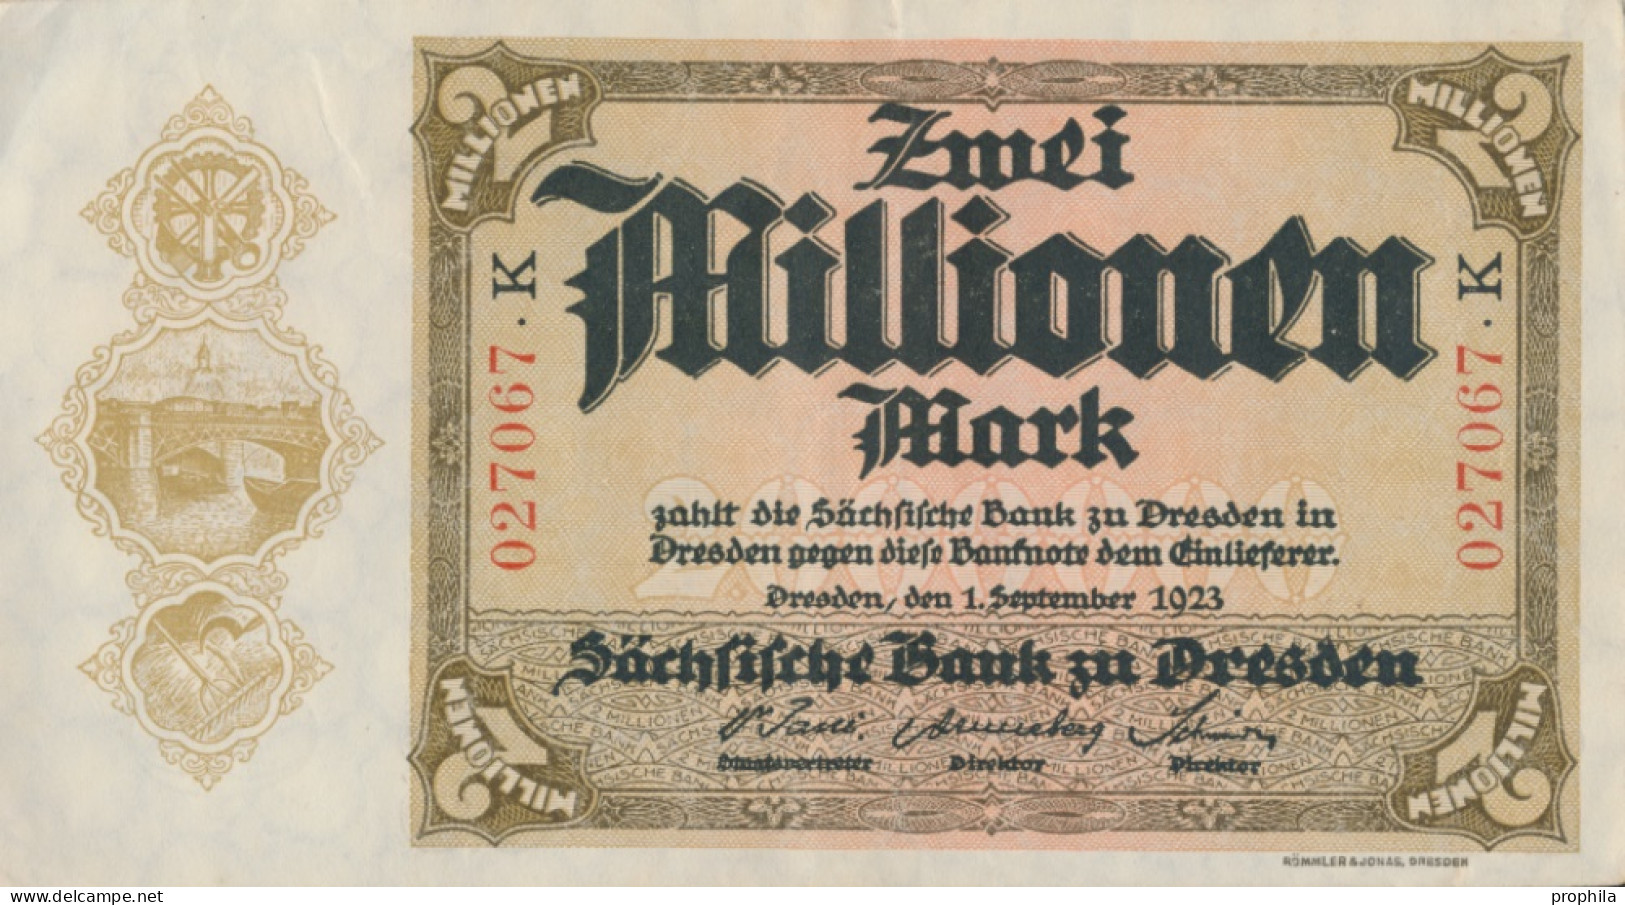 Sachsen Rosenbg: SAX20 Länderbanknote Sachsen Gebraucht (III) 1923 2 Mio. Mark (10288531 - 2 Miljoen Mark